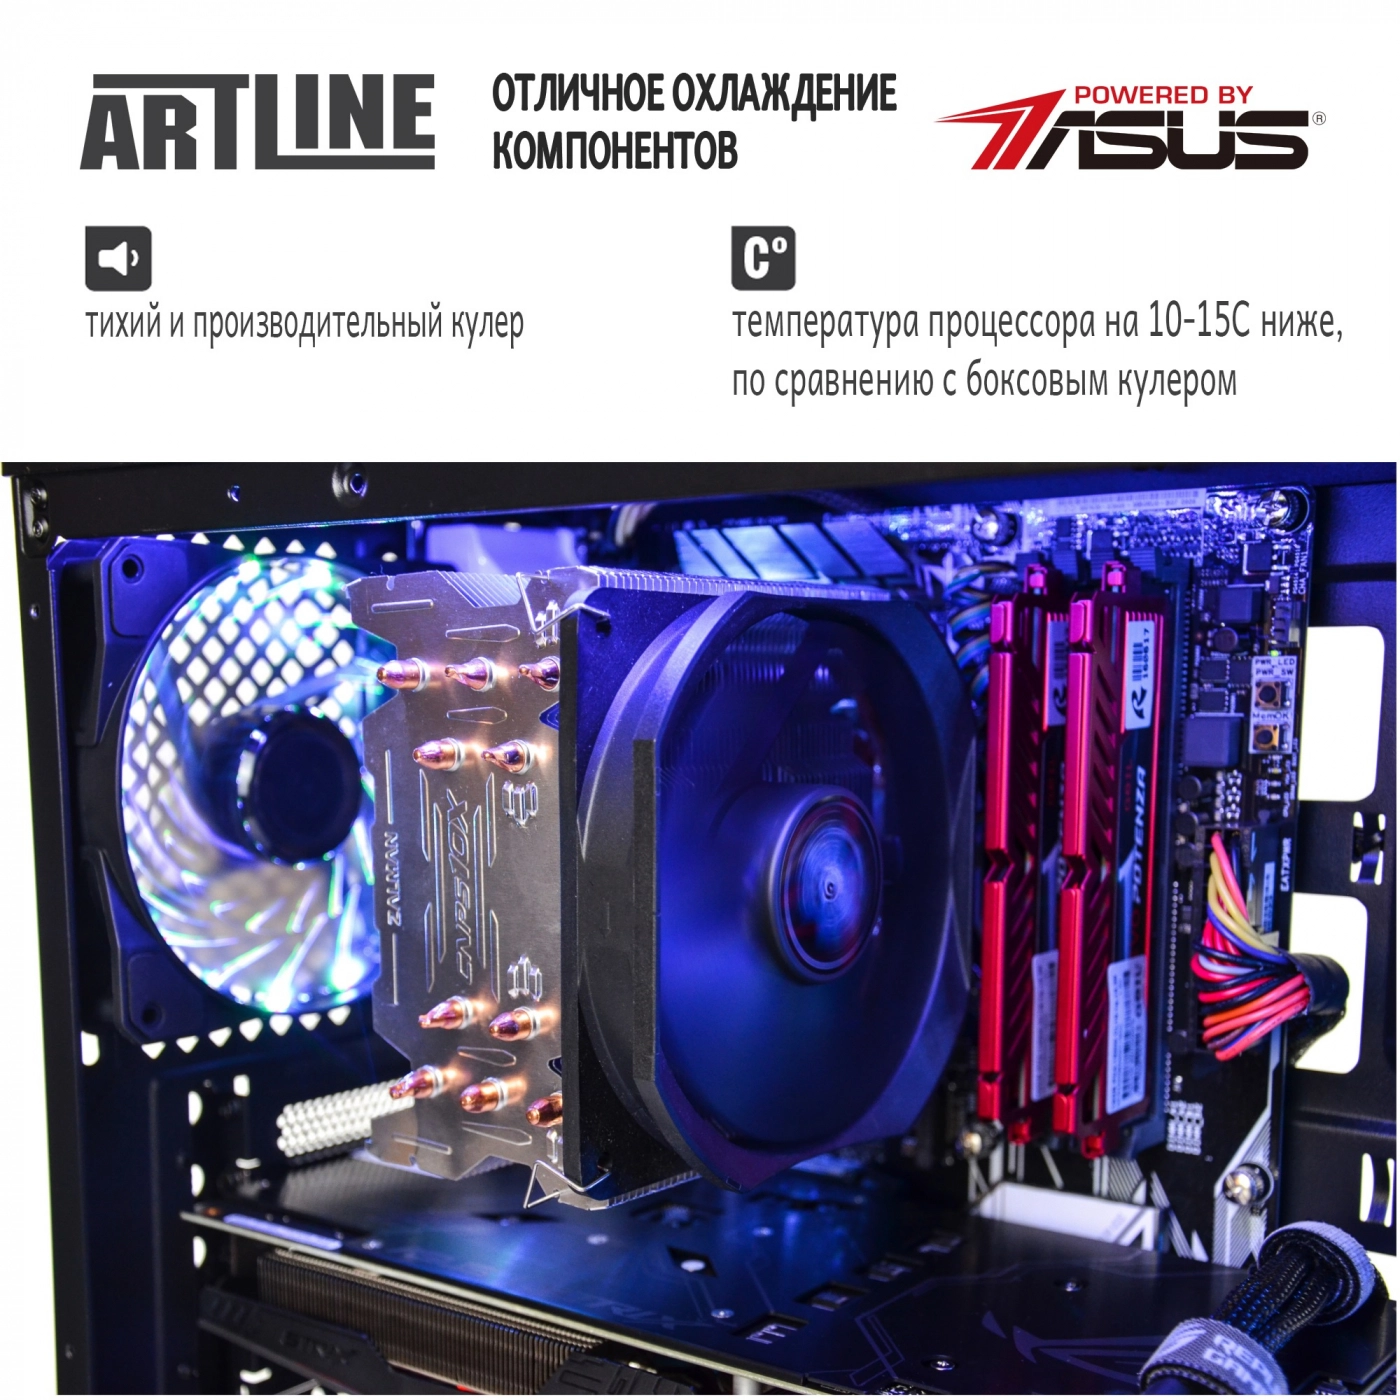 Купить Компьютер ARTLINE Gaming X96v03 - фото 4